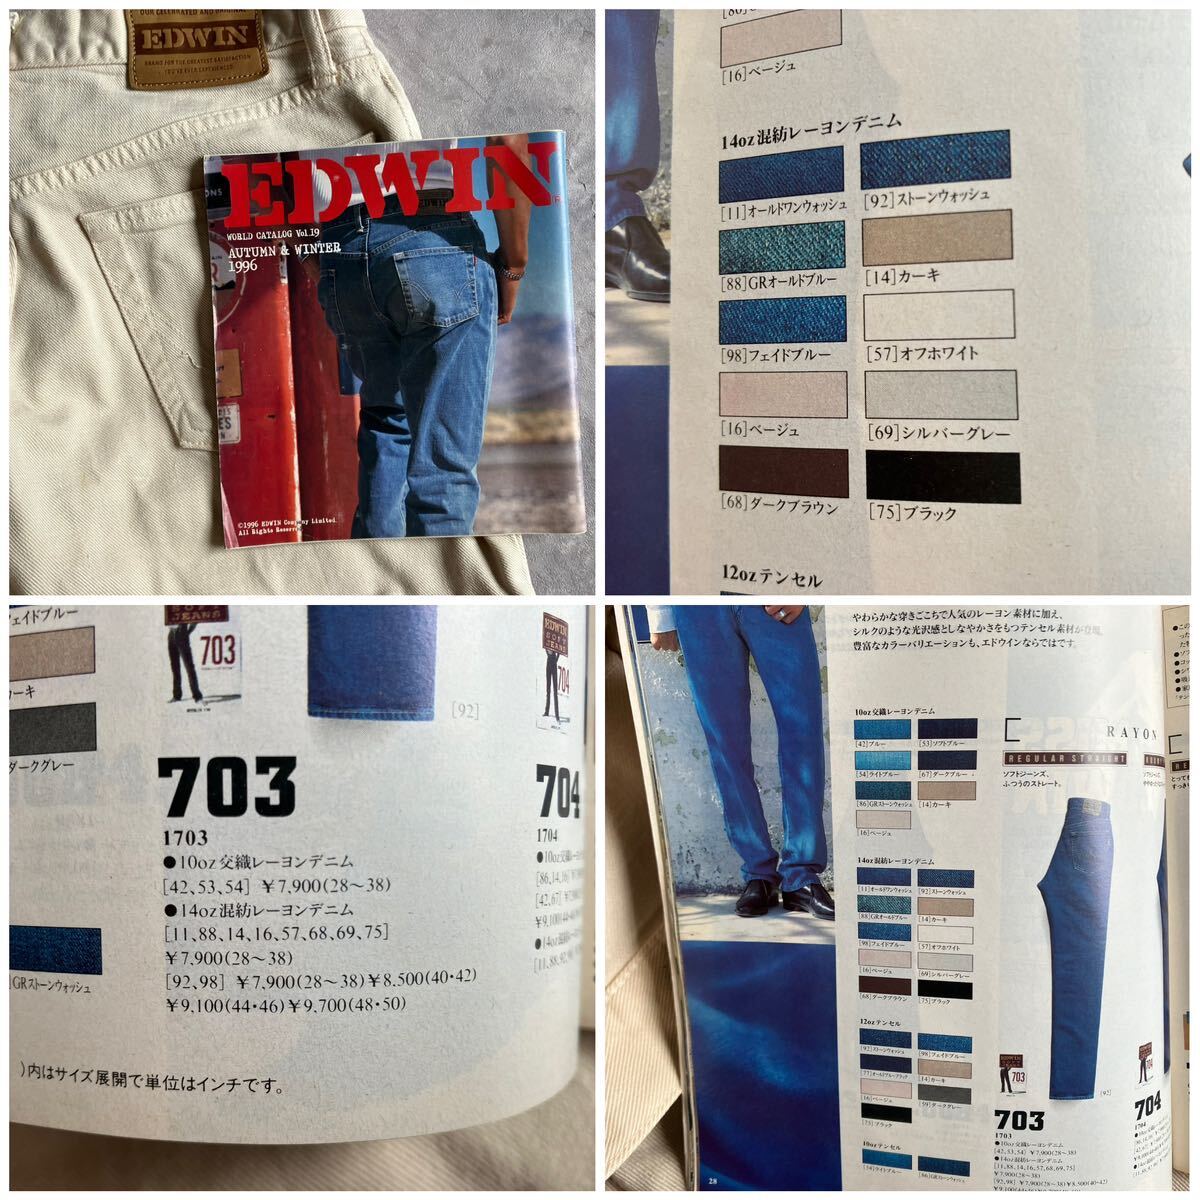 即決 W30 エドウィン EDWIN 90's オールド ソフトジーンズ Lot.1703 ベージュ系色 日本製 MADE IN JAPAN レーヨン混合デニム 廃盤_画像2